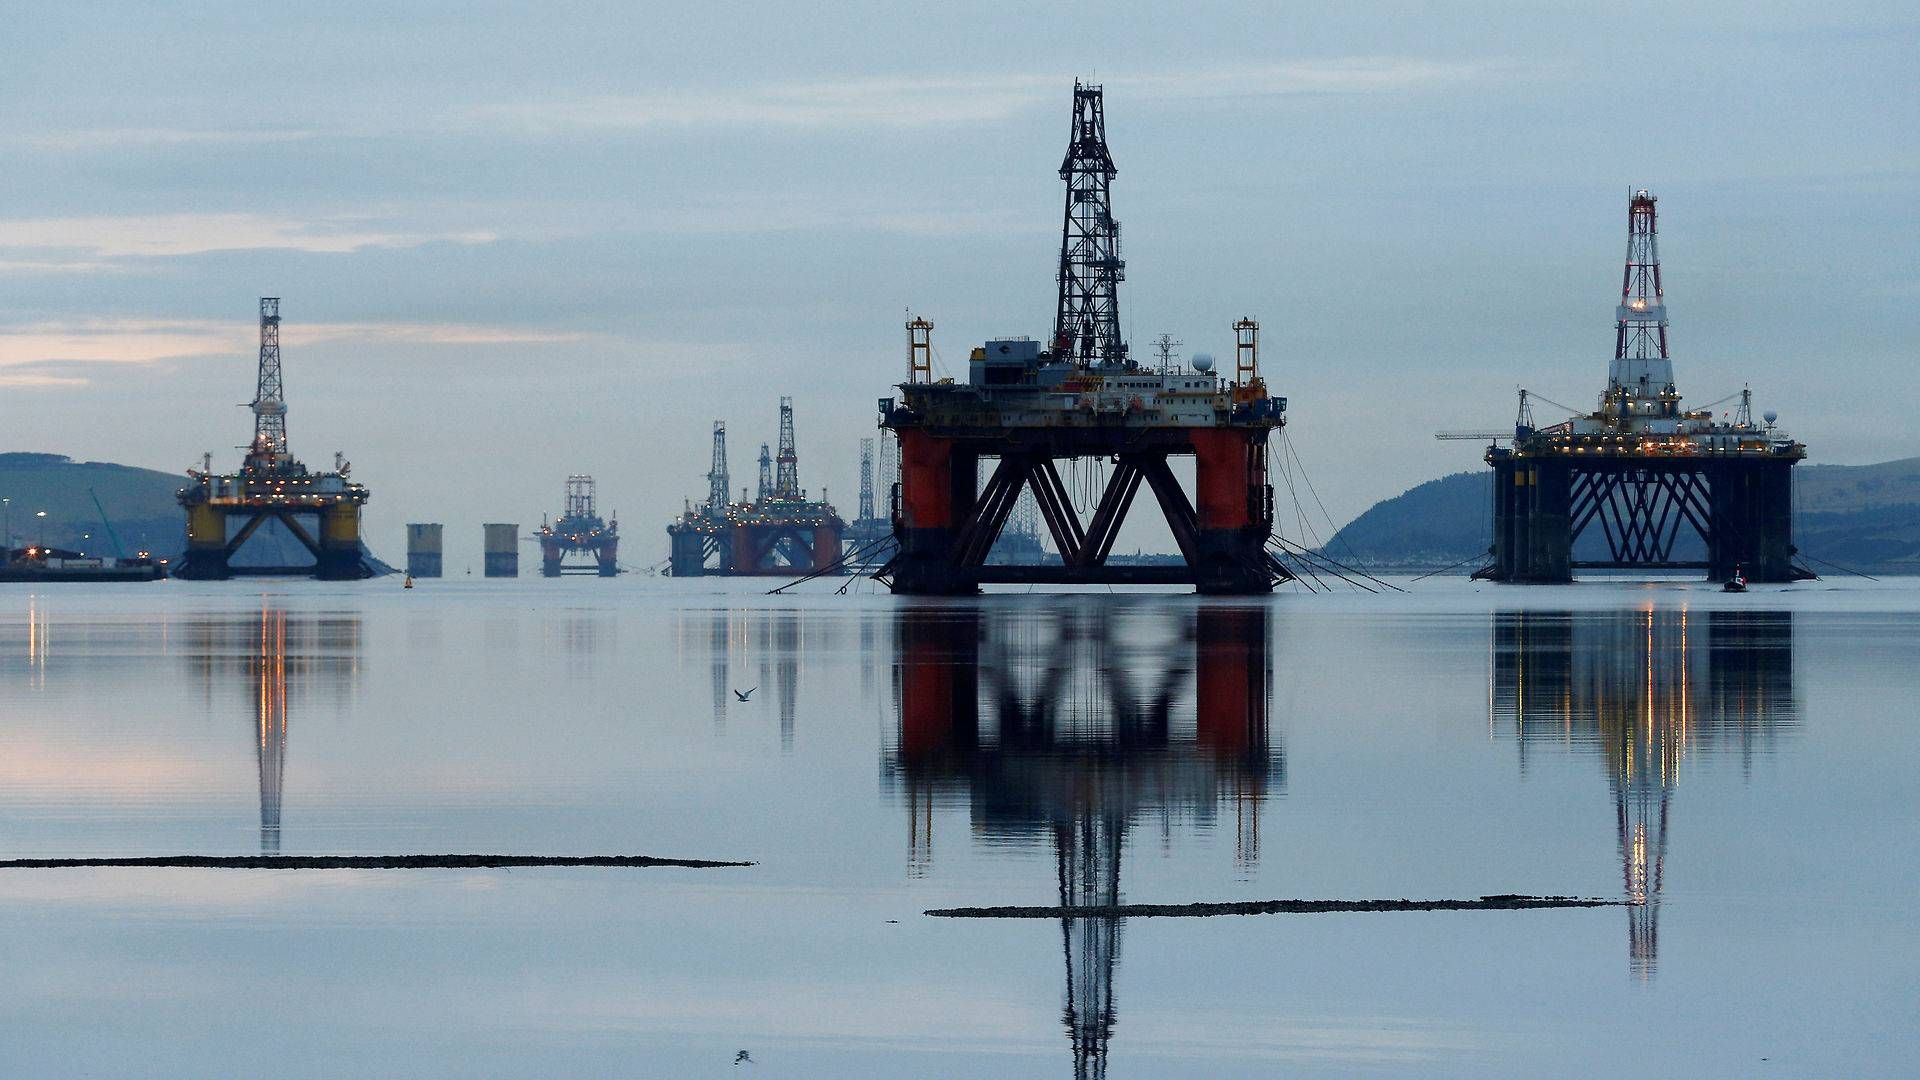 Boreaktiviteten ventes at blive markant lavere i den britiske olie- og gassektor i år. | Foto: Russell Cheyne/Reuters/Ritzau Scanpix